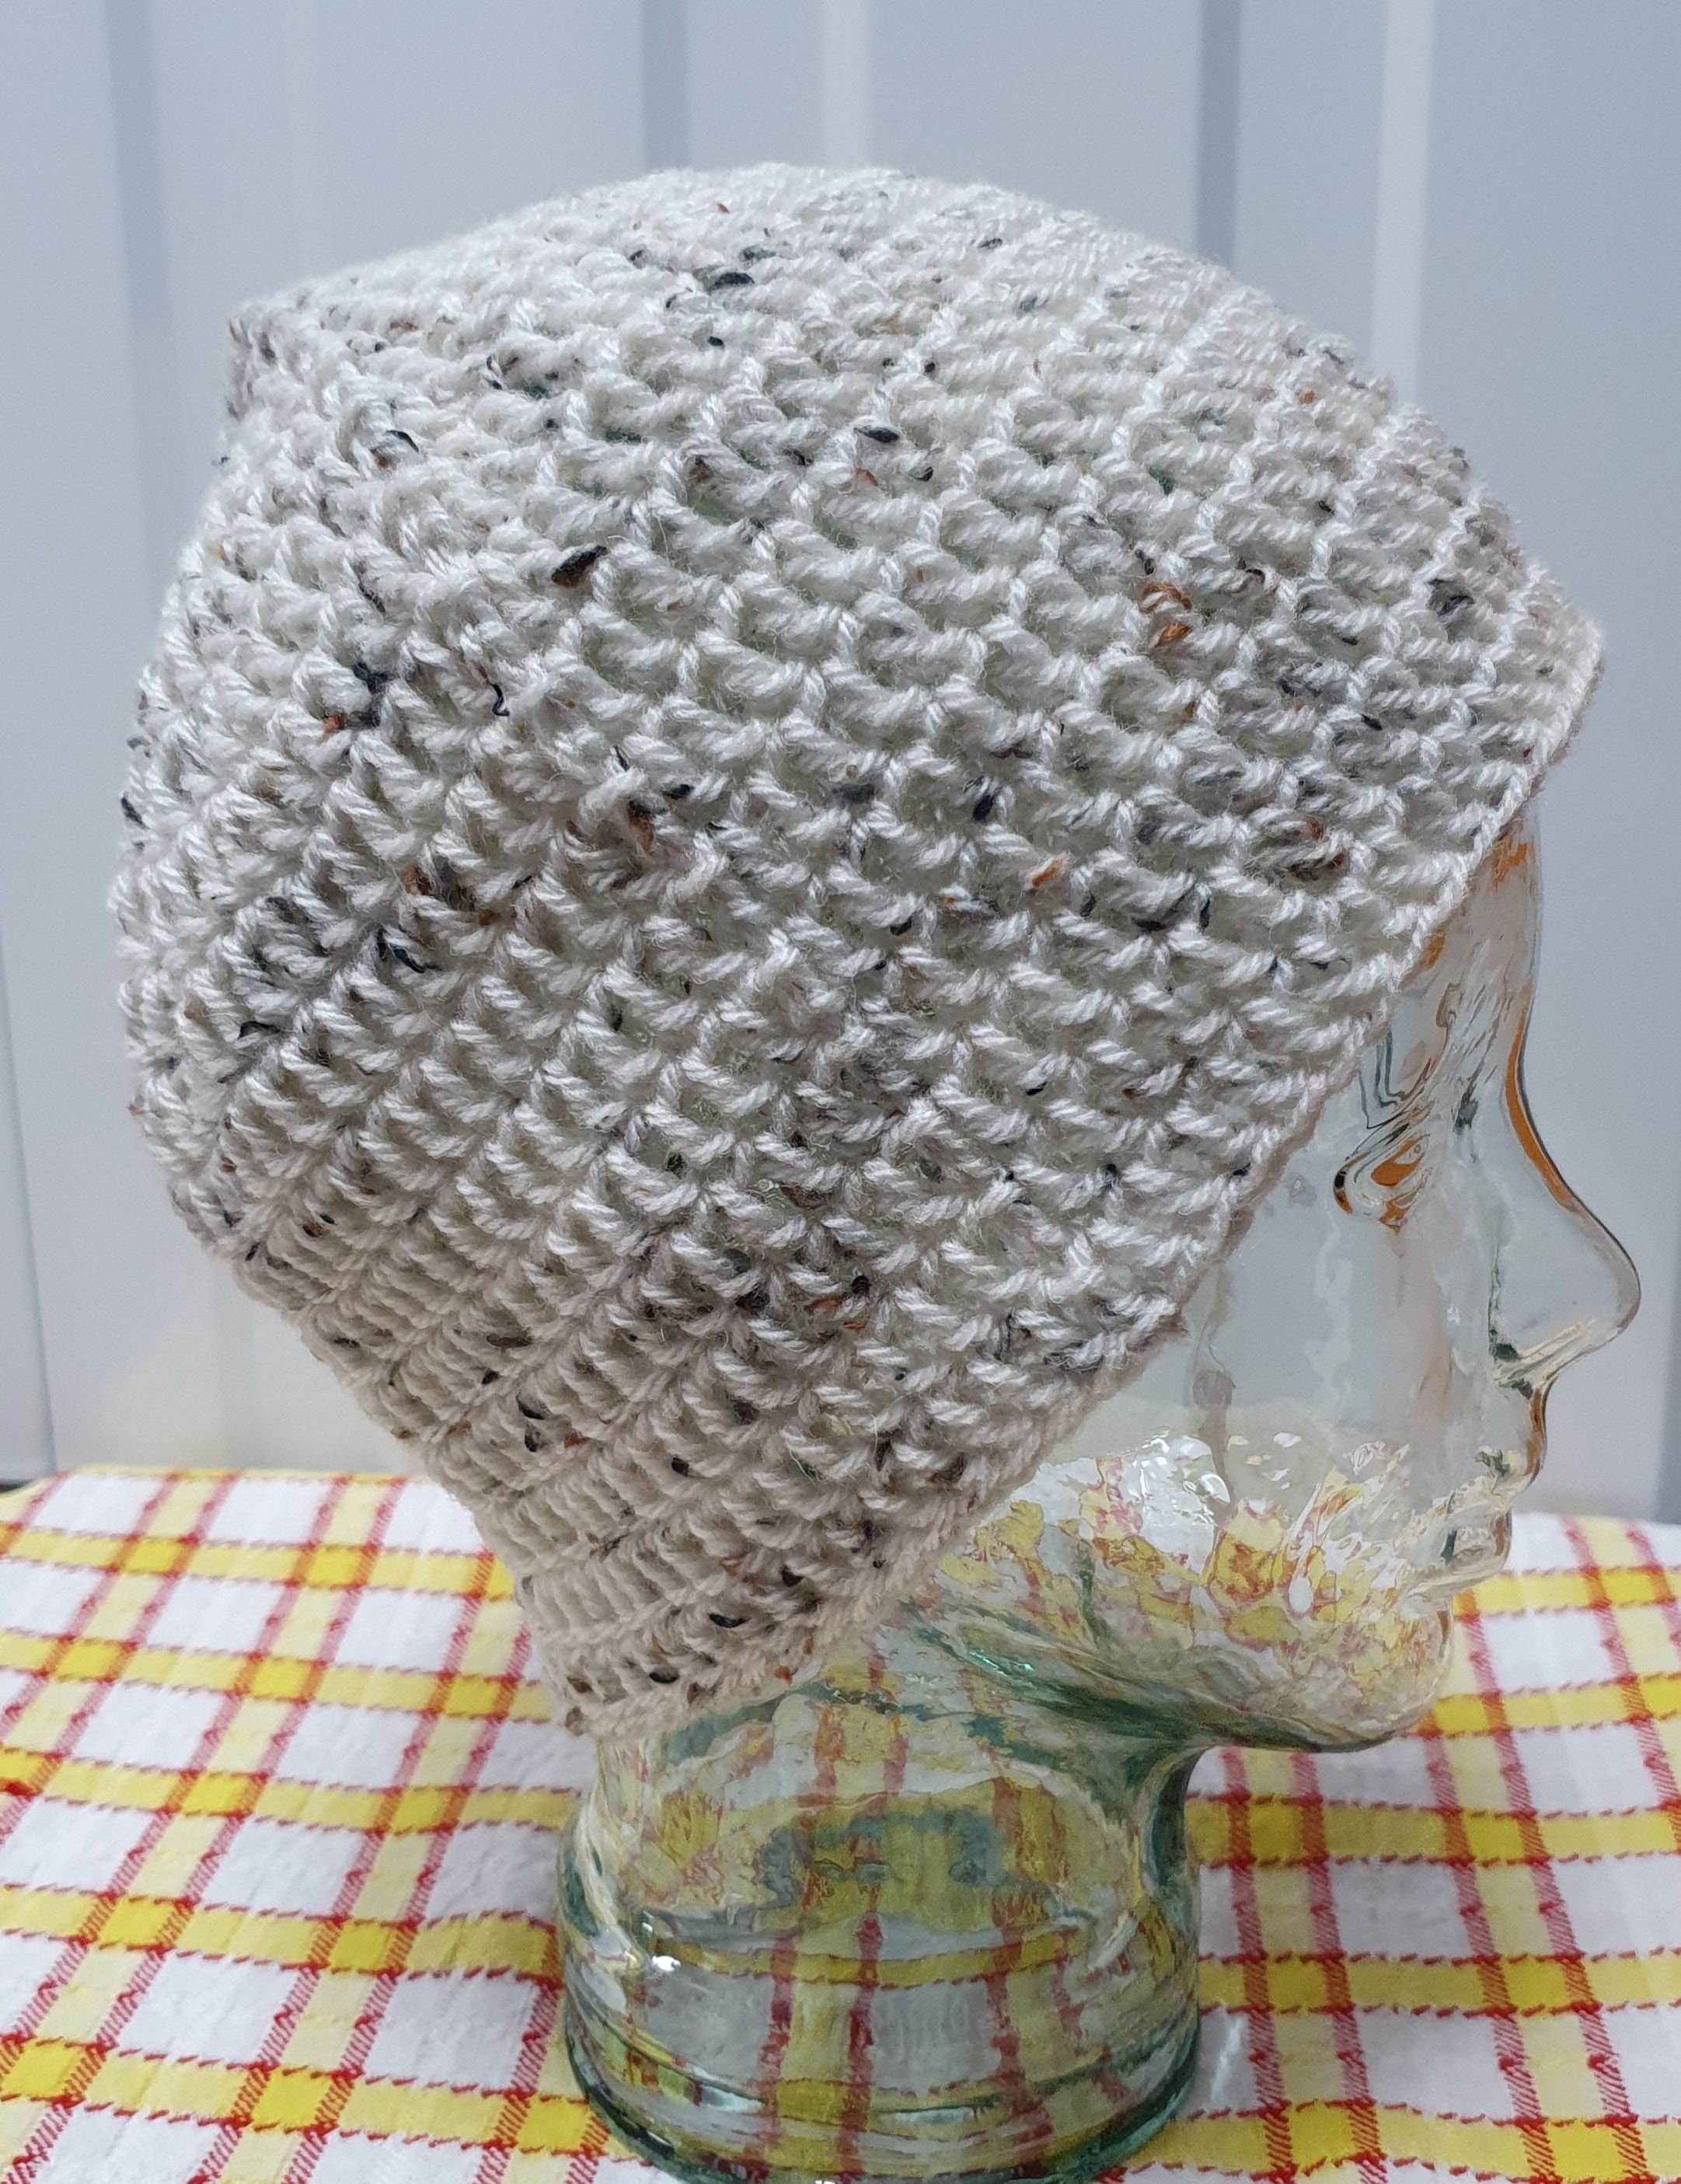 Crochet Hat Kit, Crochet Kit for Beginners, Crochet Kit UK